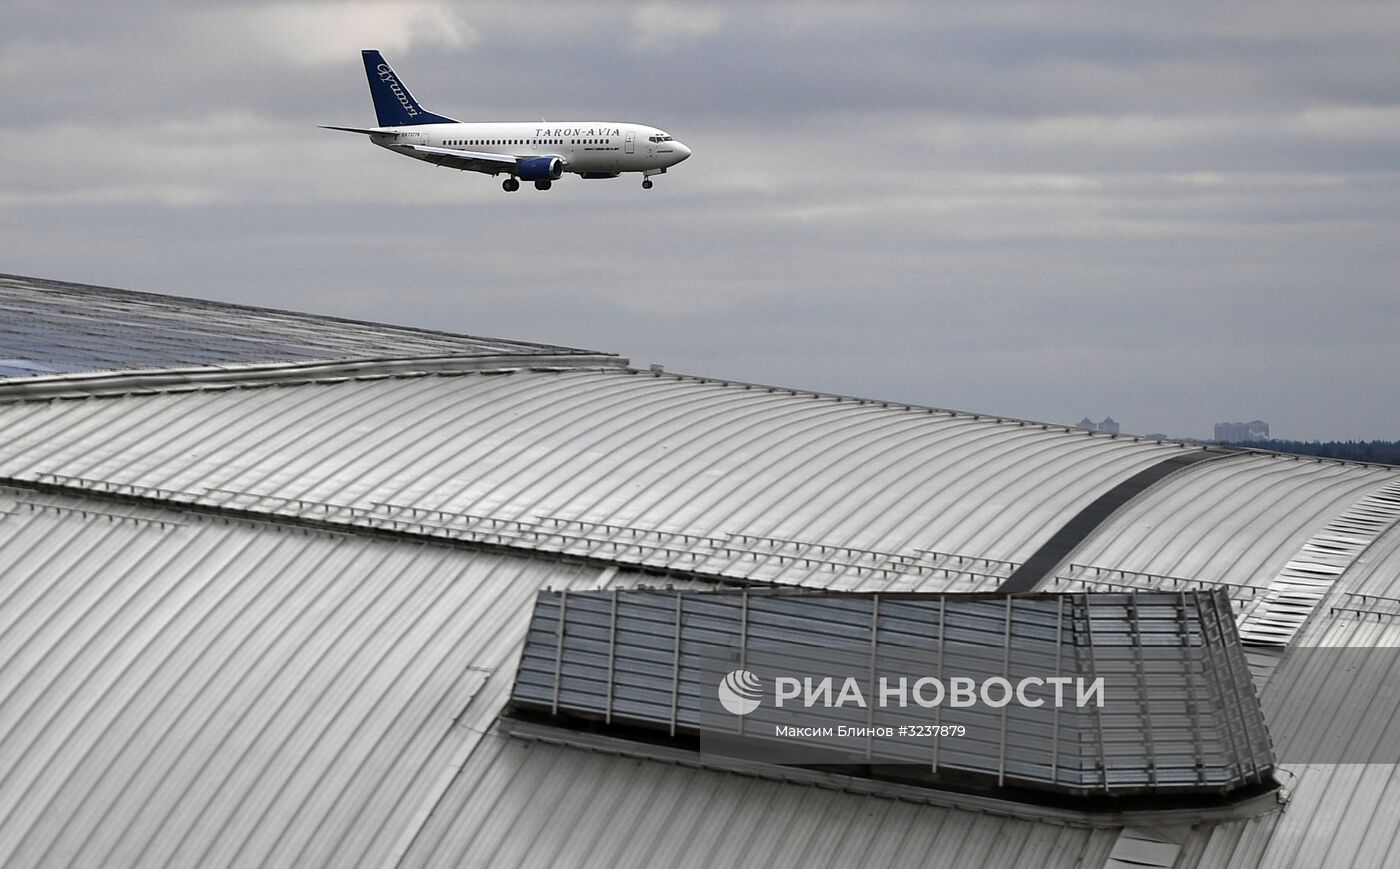 Первый рейс авиакомпании "Тарон-Авиа" из "Внуково"